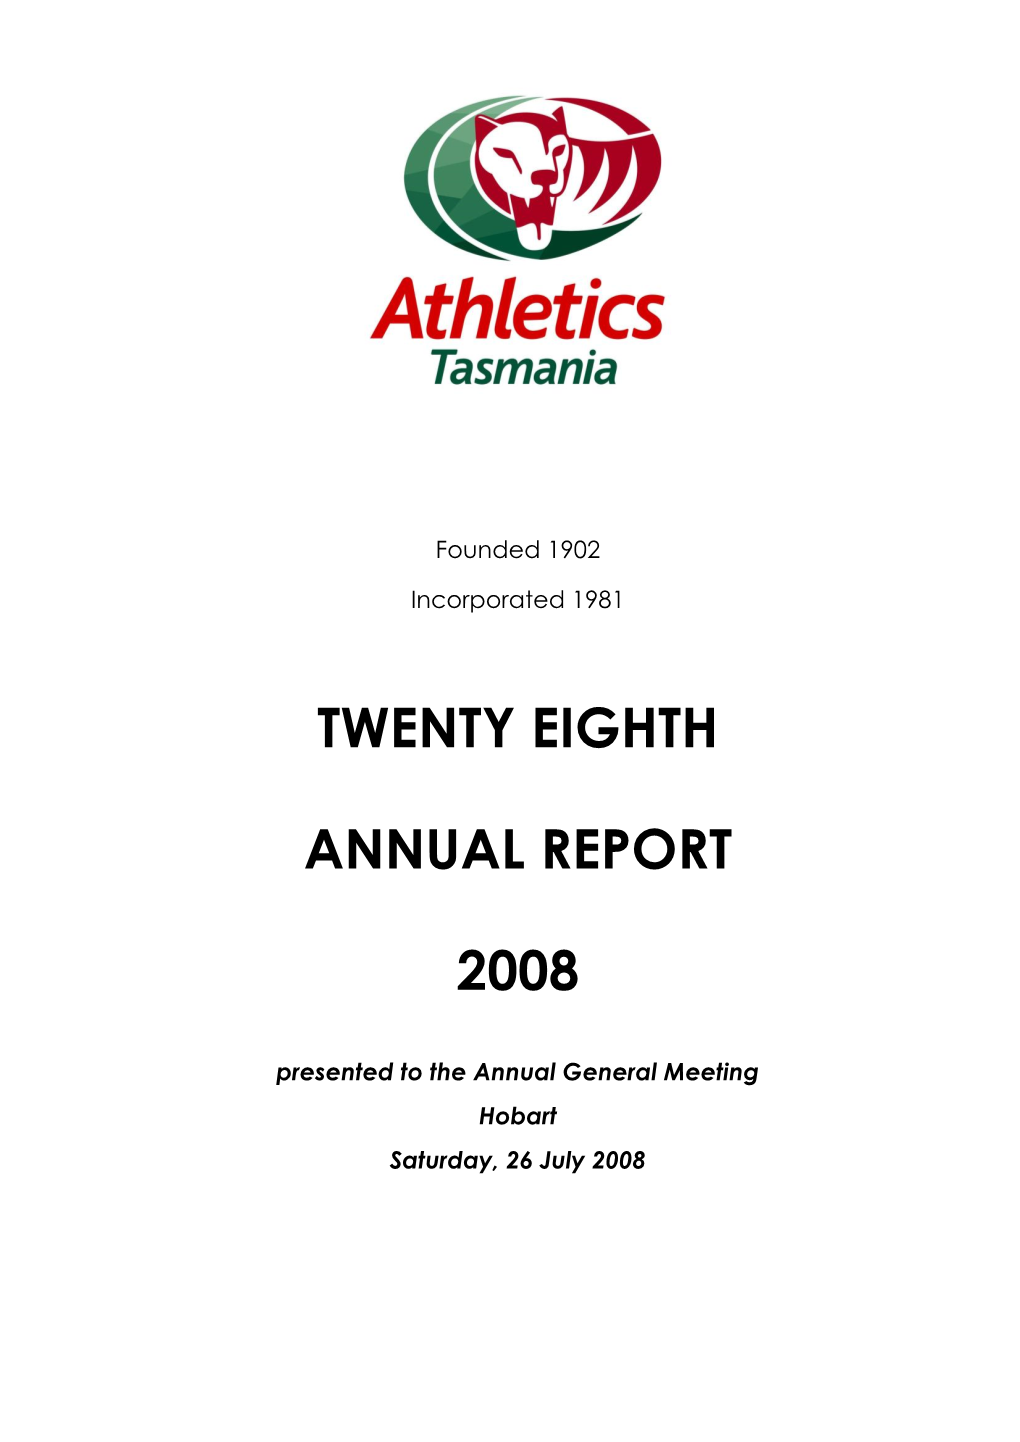 Athletics Tasmania Annual Report